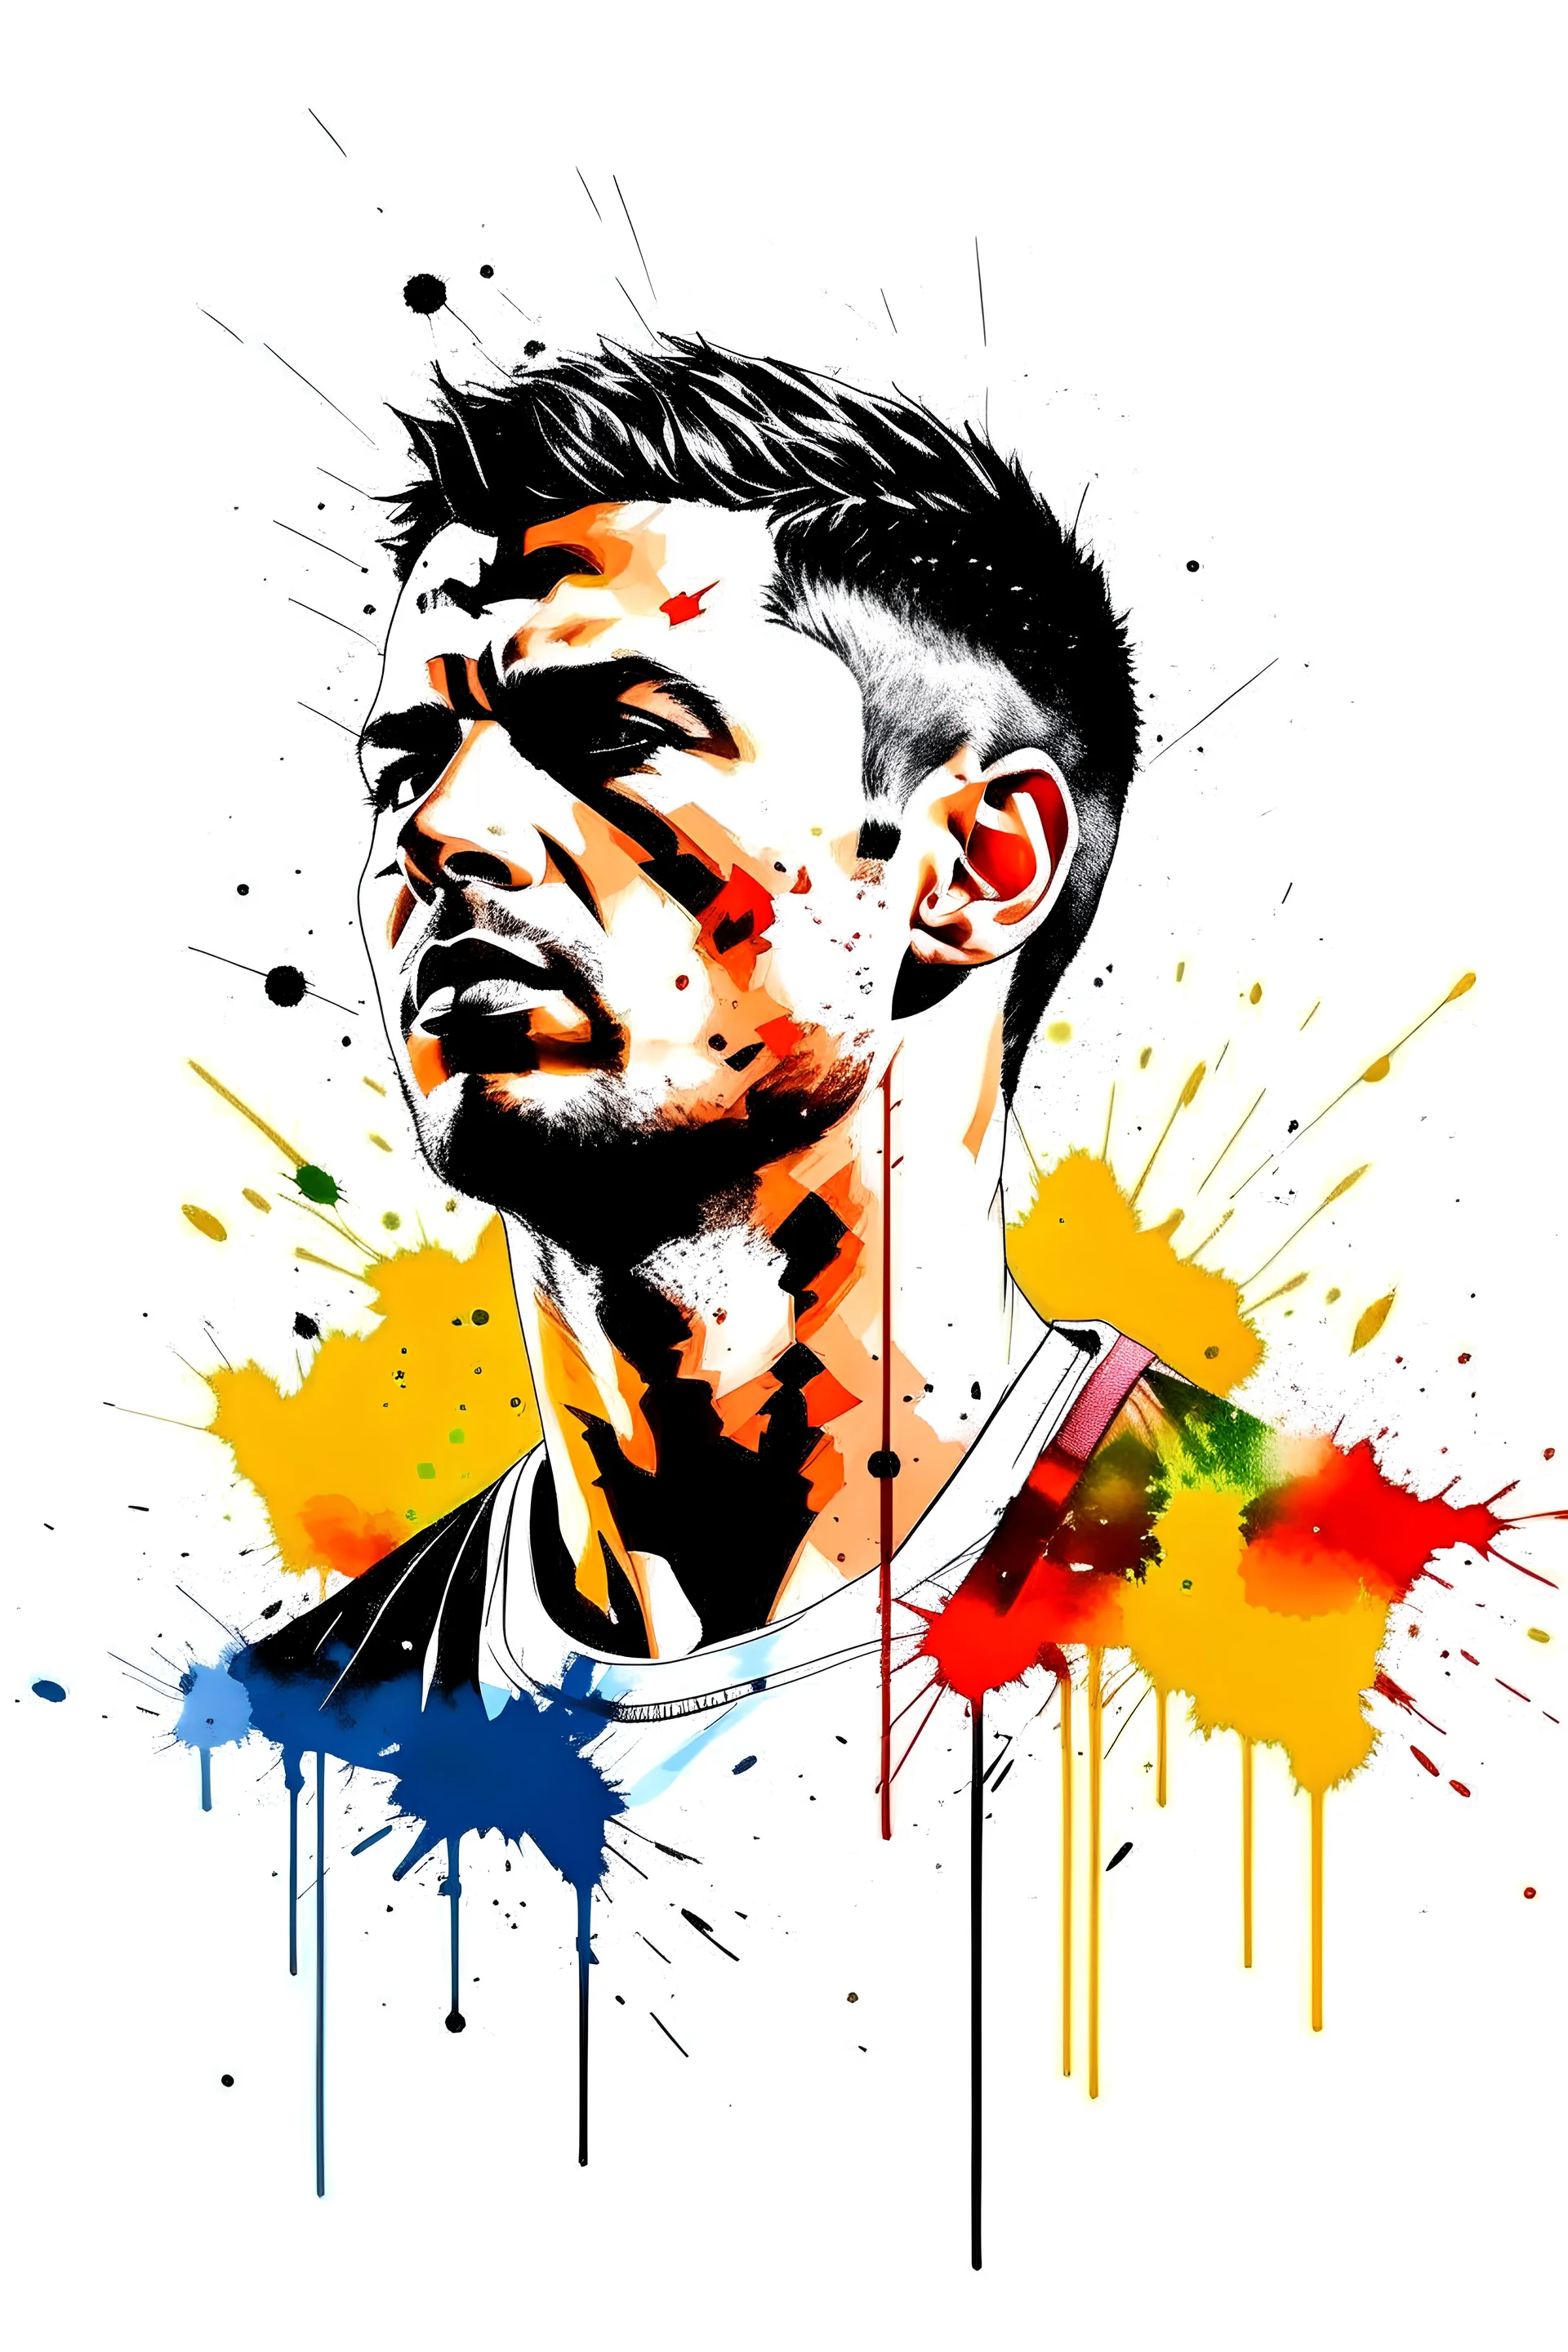 3cpo "Cristiano Ronaldo" , concept art, water color, water color effect, splash,use orang & black & white, logo design,white background,